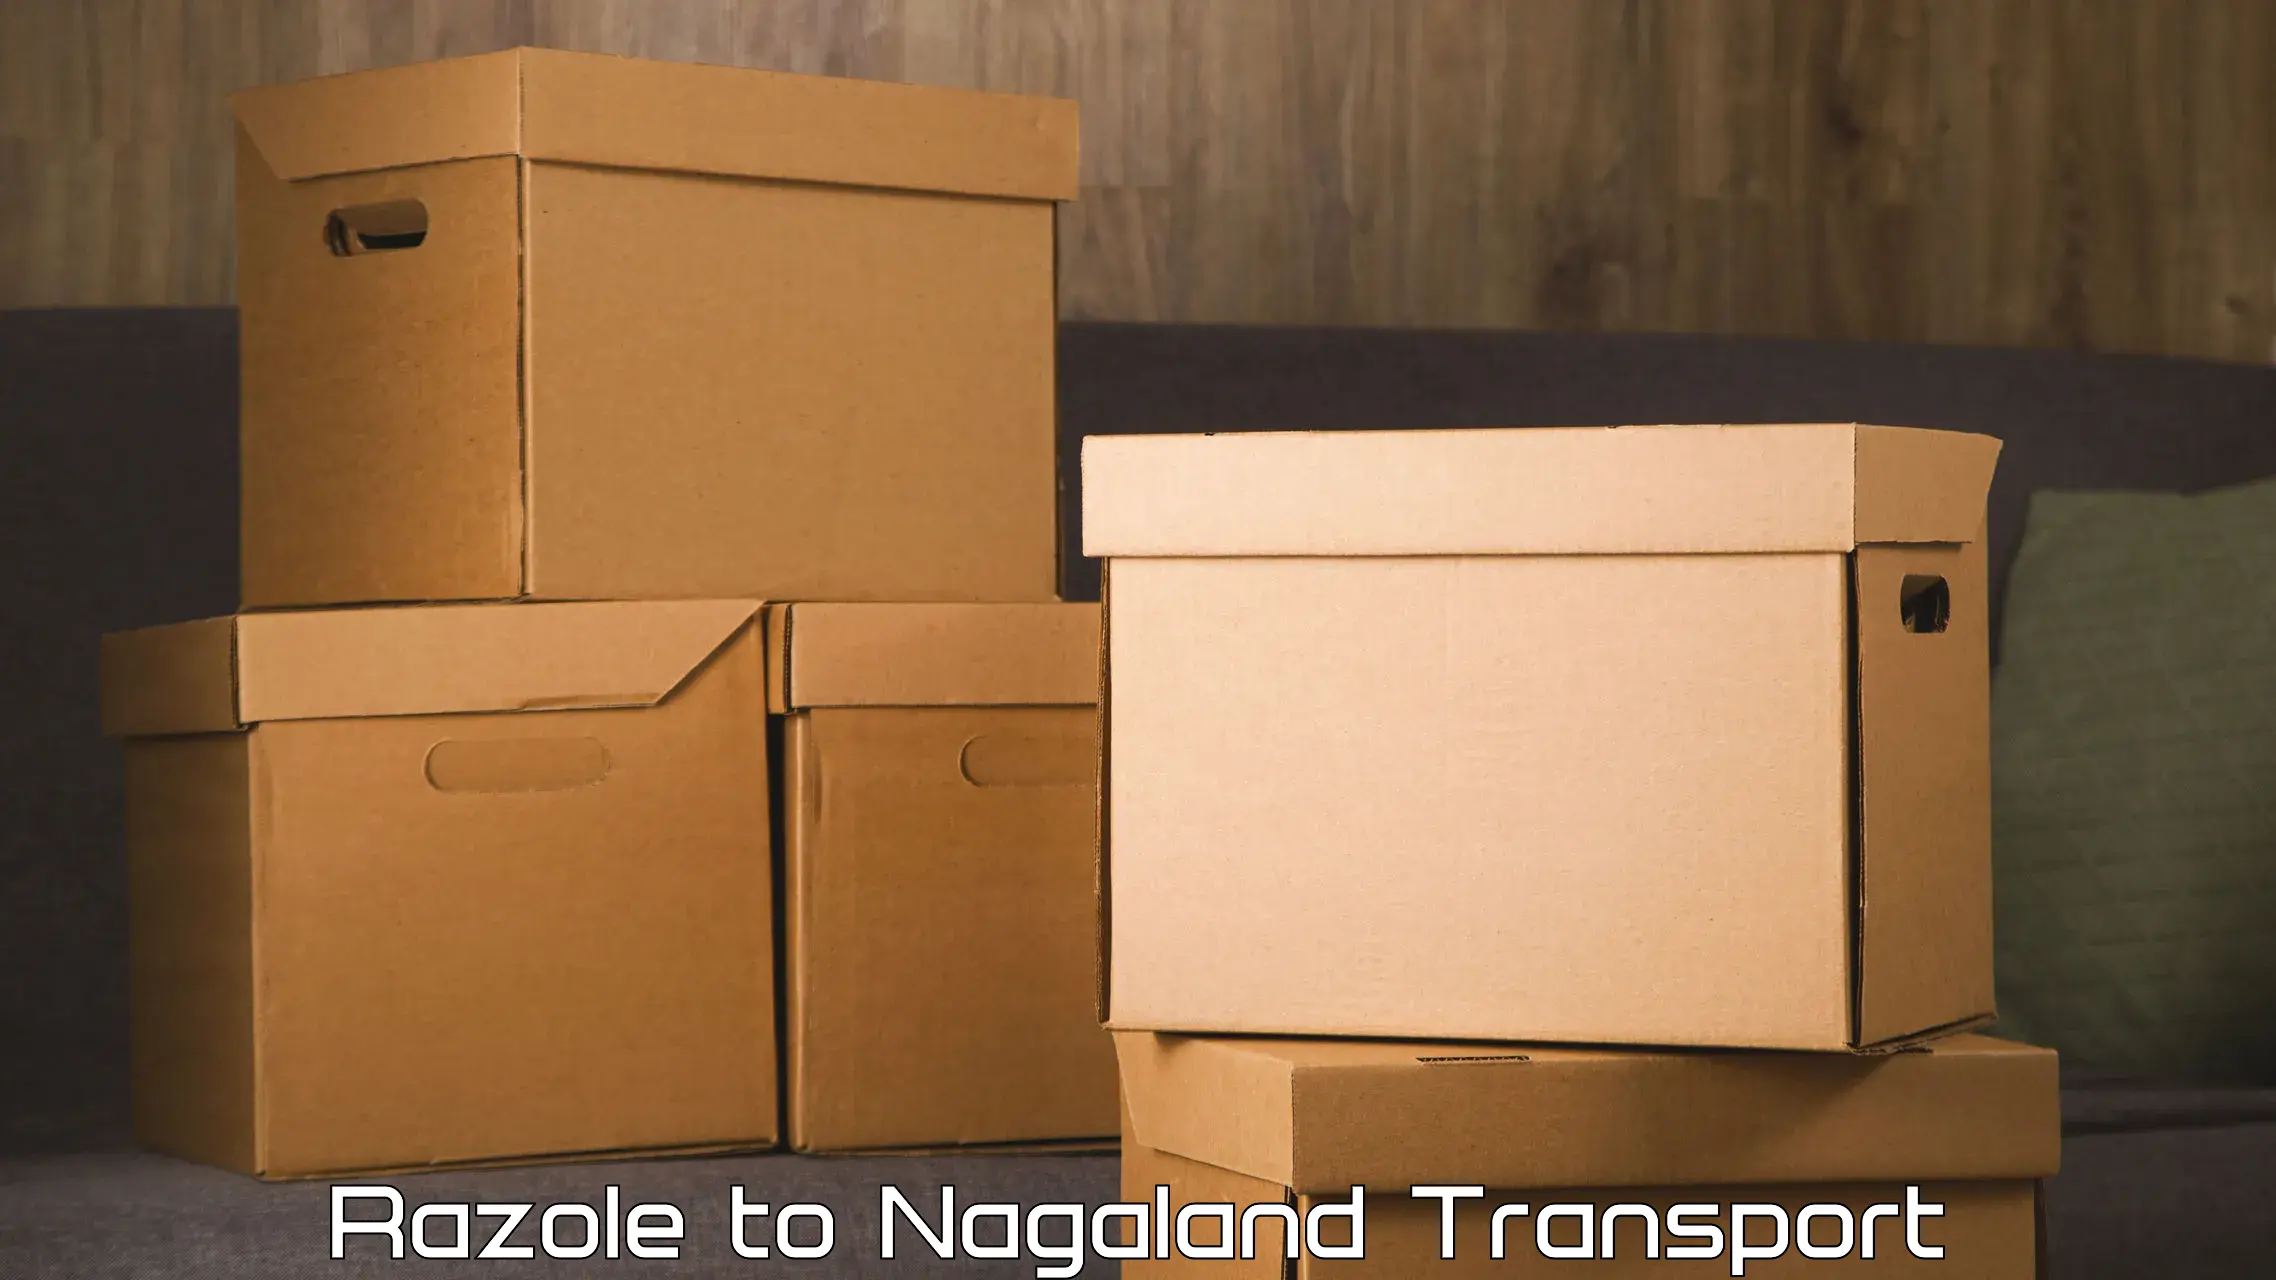 Nearest transport service Razole to NIT Nagaland